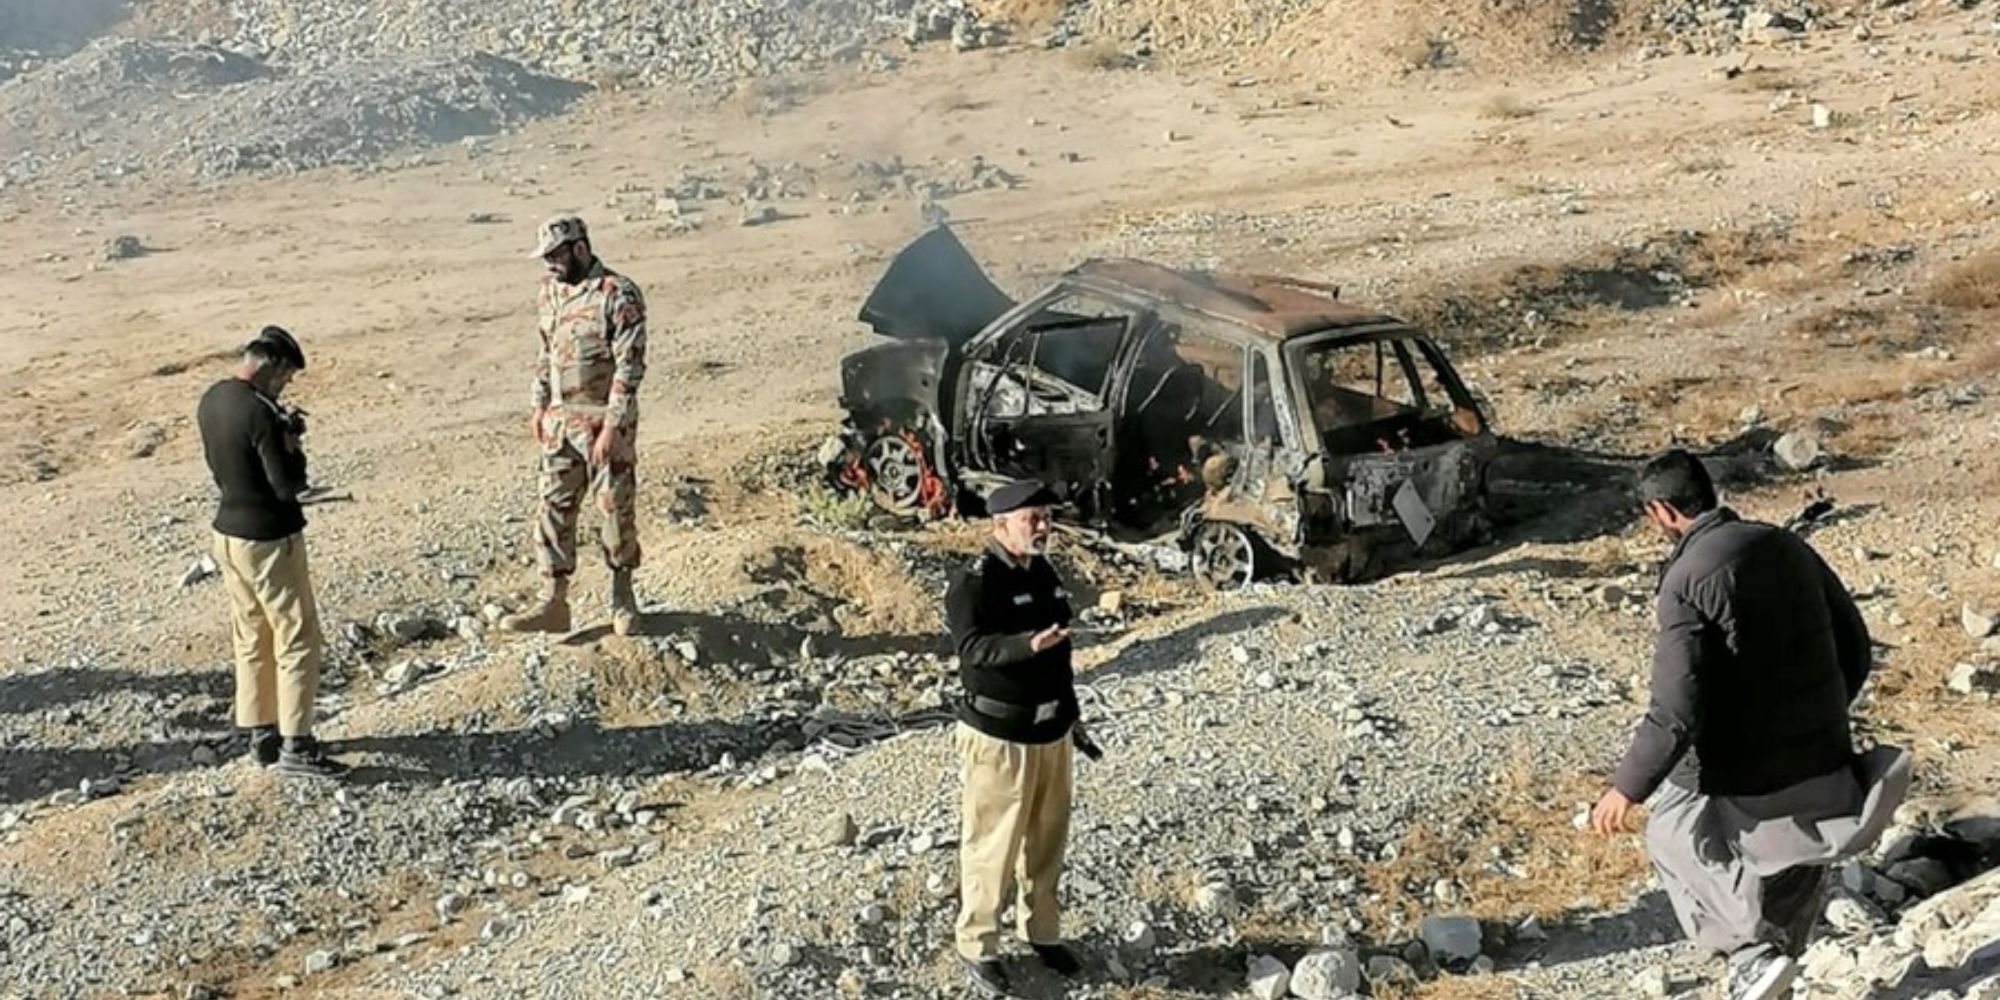 Εικόνα από το σημείο που έσκασε η βόμβα στο Πακιστάν